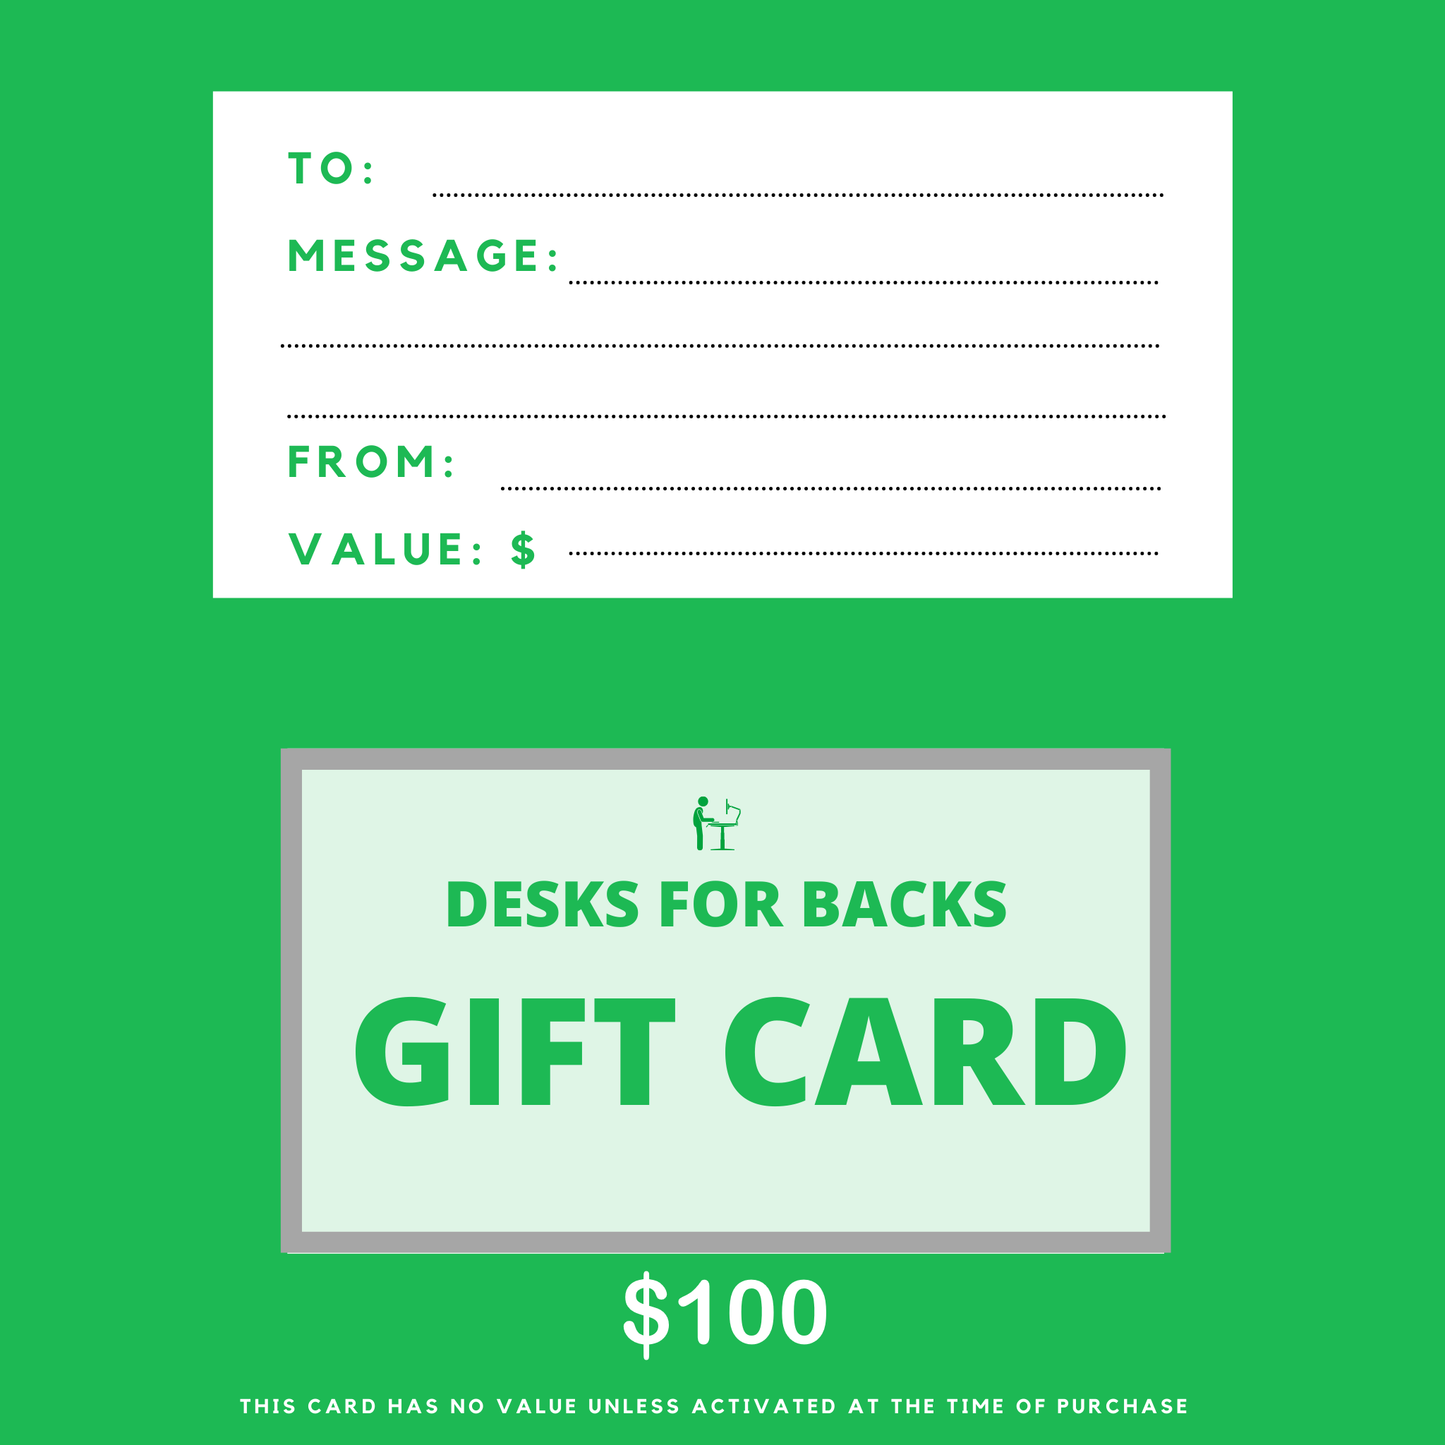 Desks for backs gift card $100